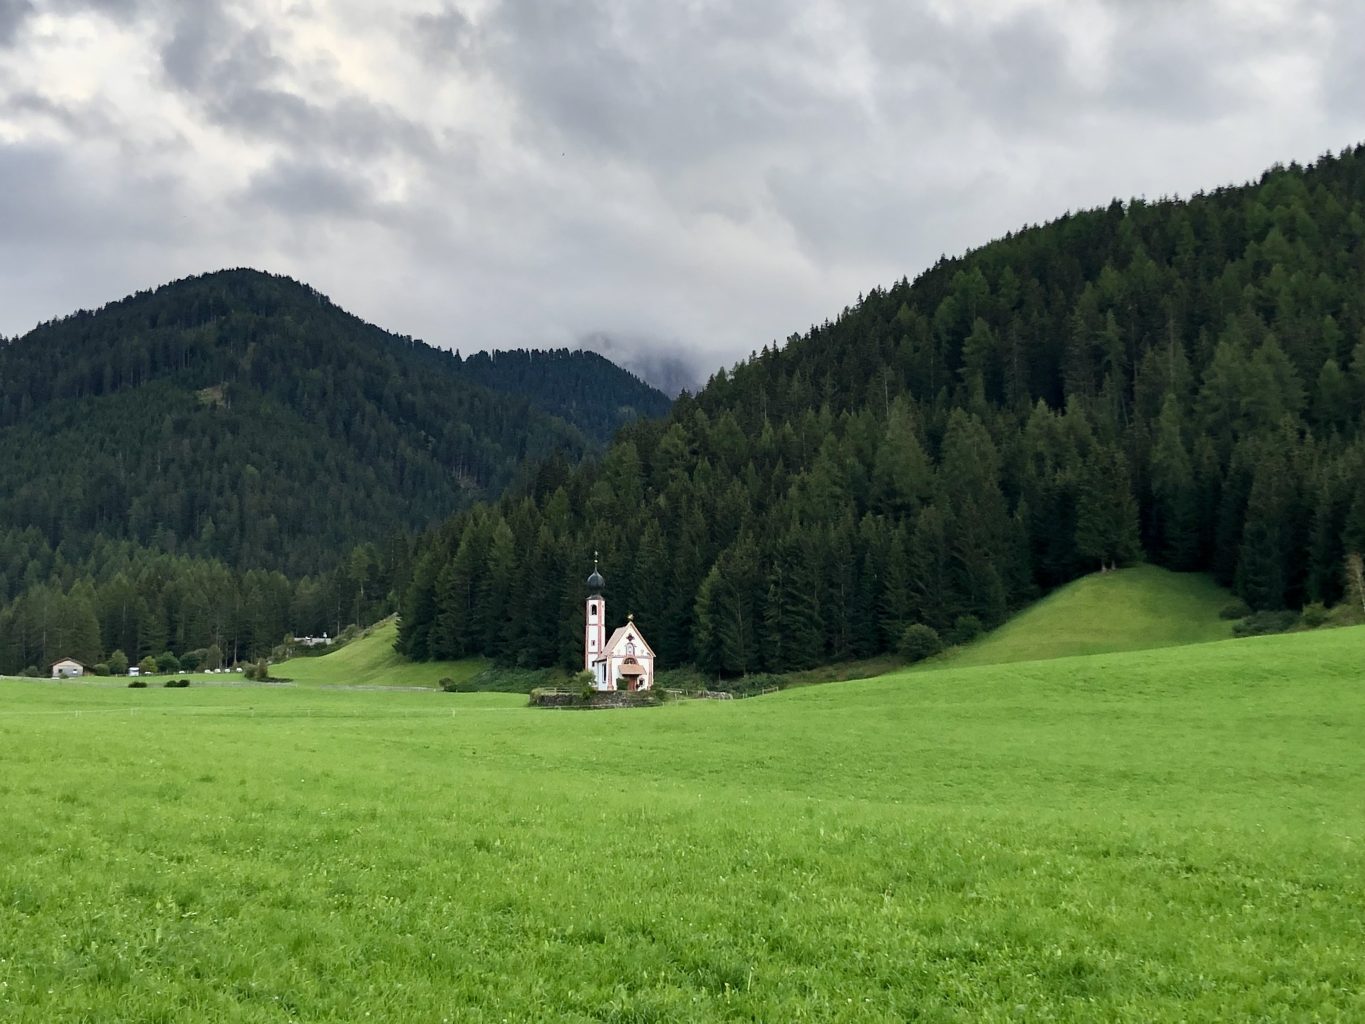 Chiesetta di San Giovanni in Ranui. Ruta de 14 días por Dolomitas en furgoneta camper desde España